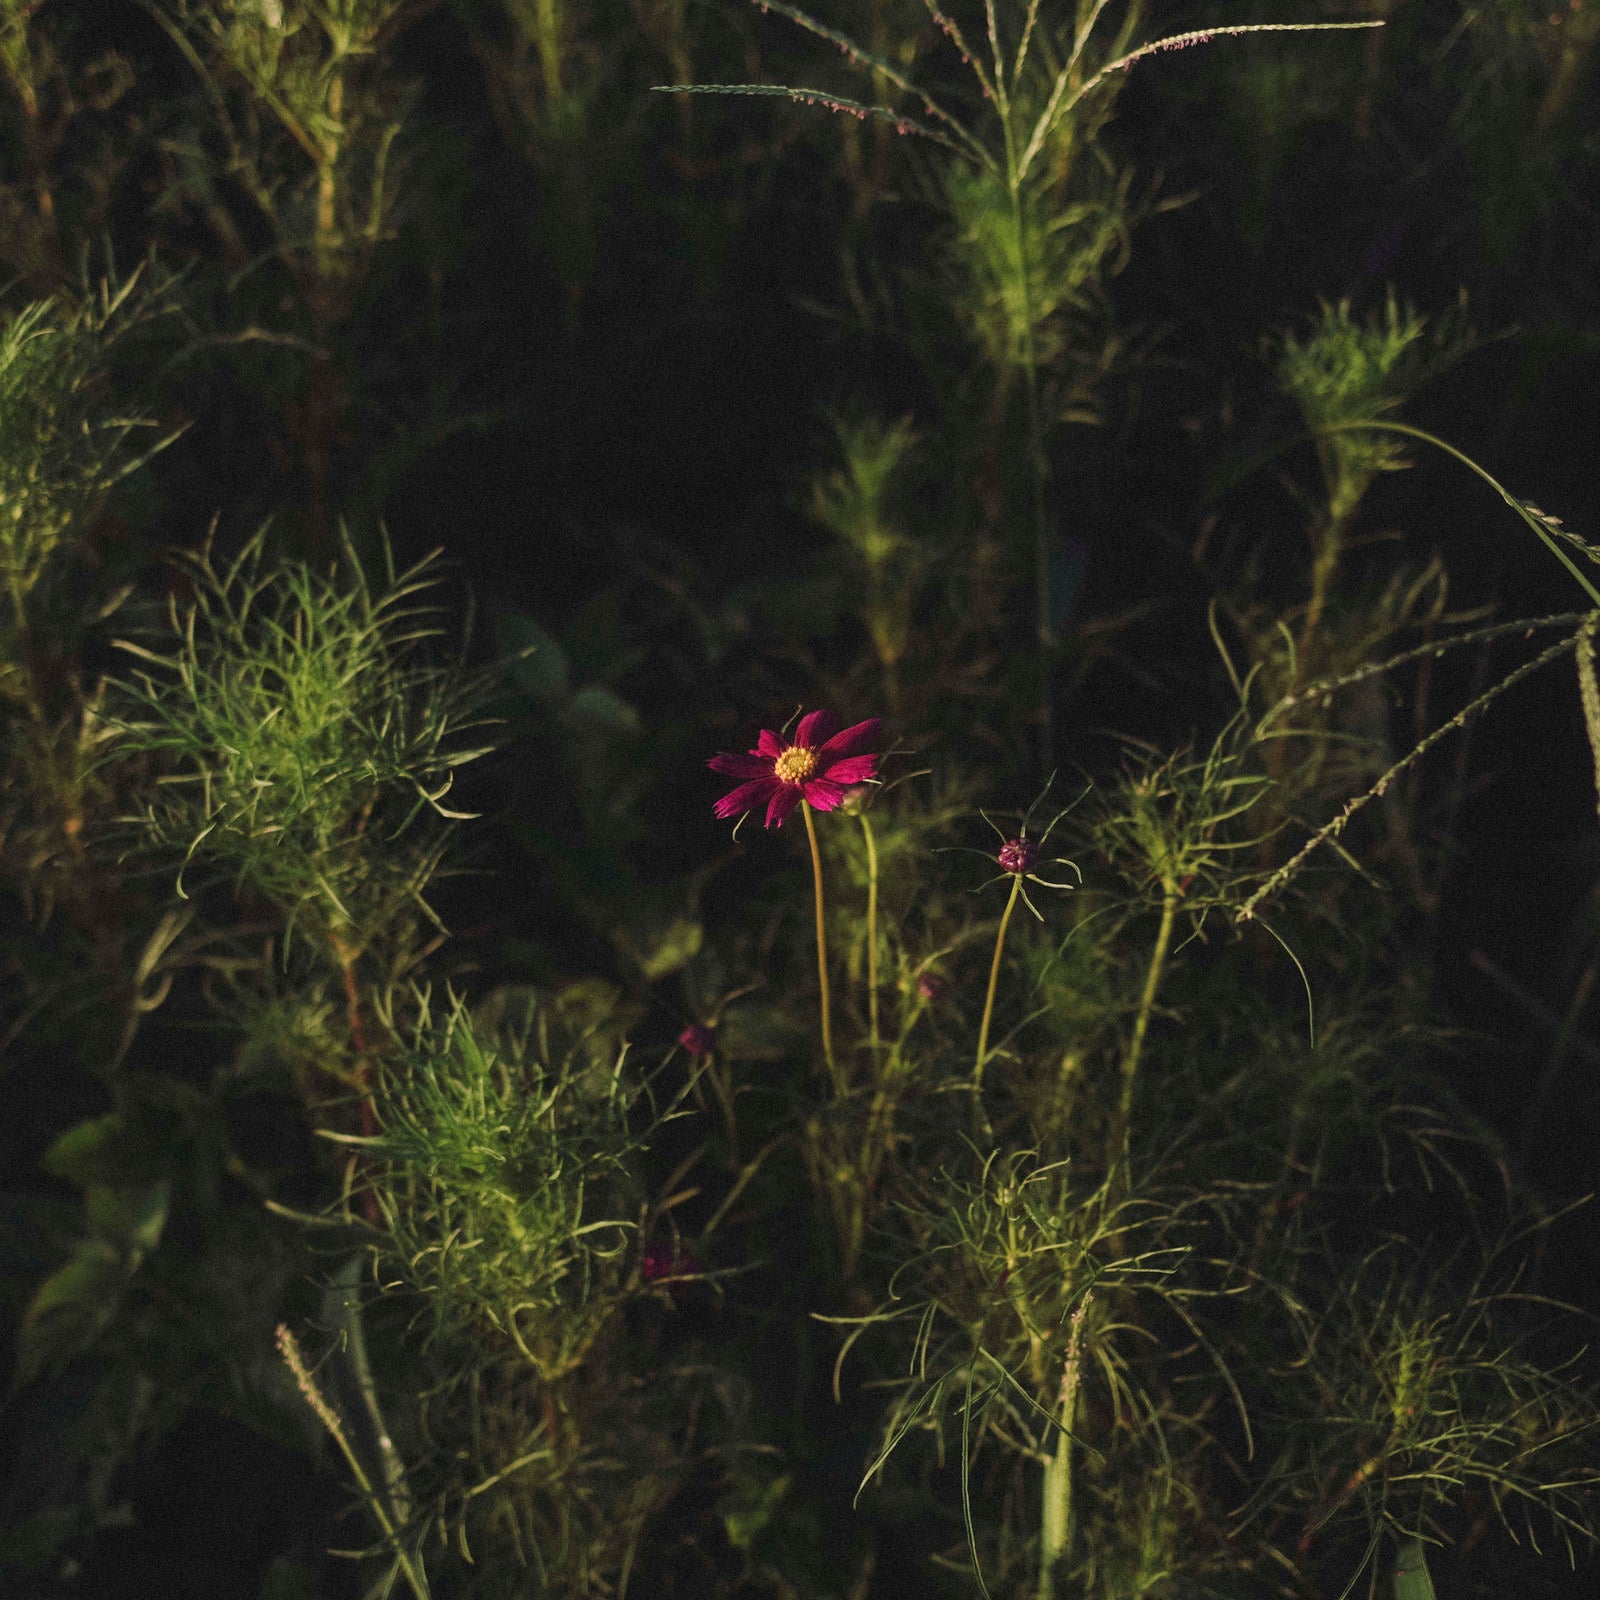 「暗がりに一輪だけ咲くコスモス」の写真